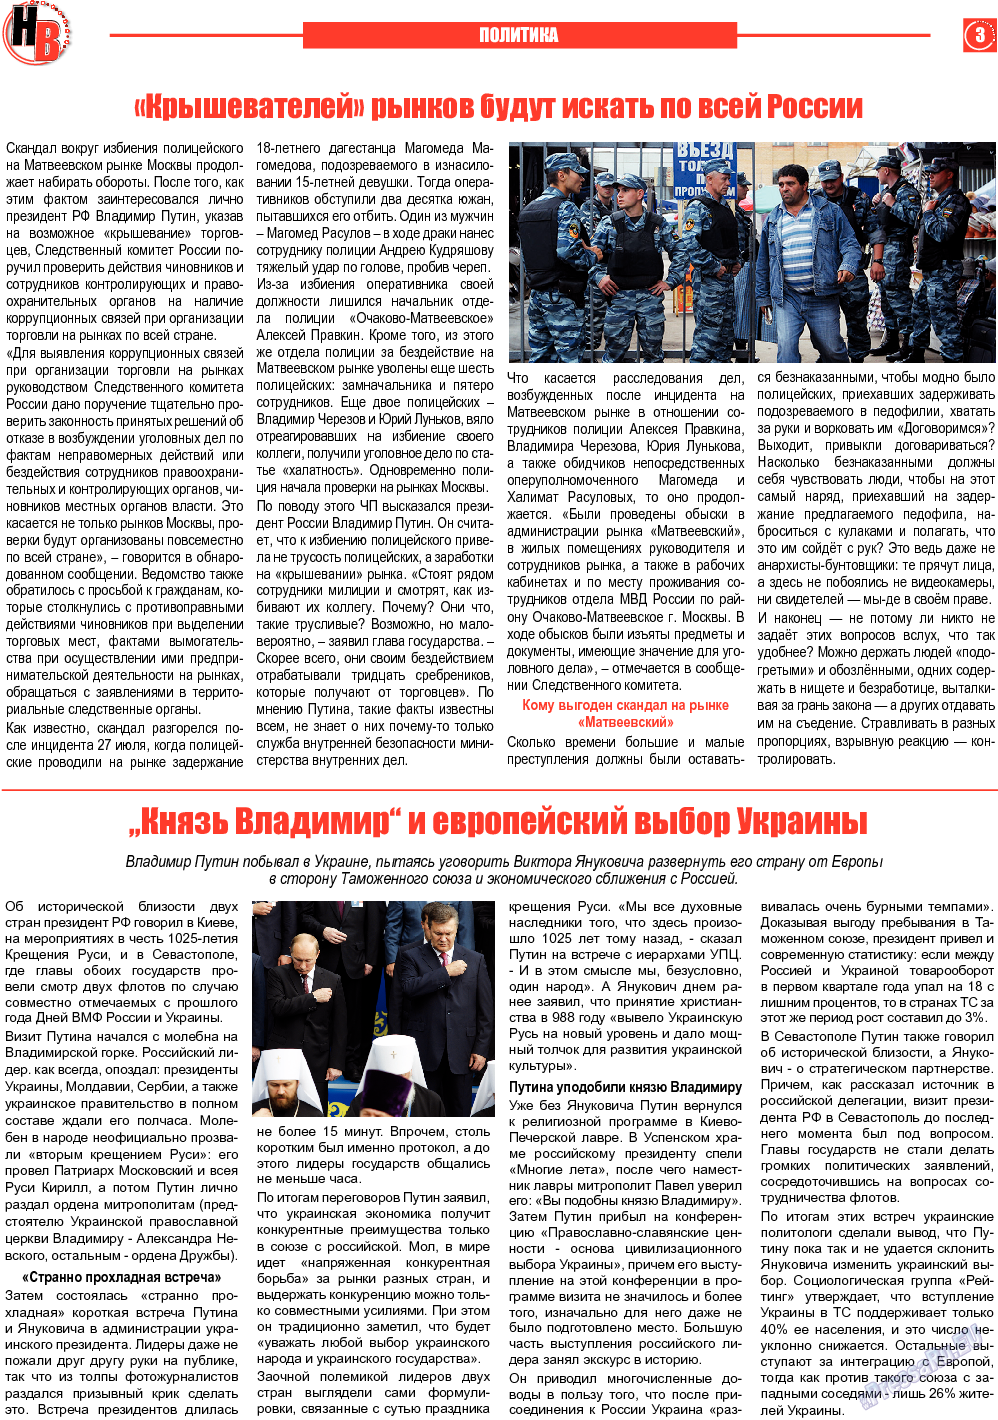 Наше время, газета. 2013 №8 стр.3